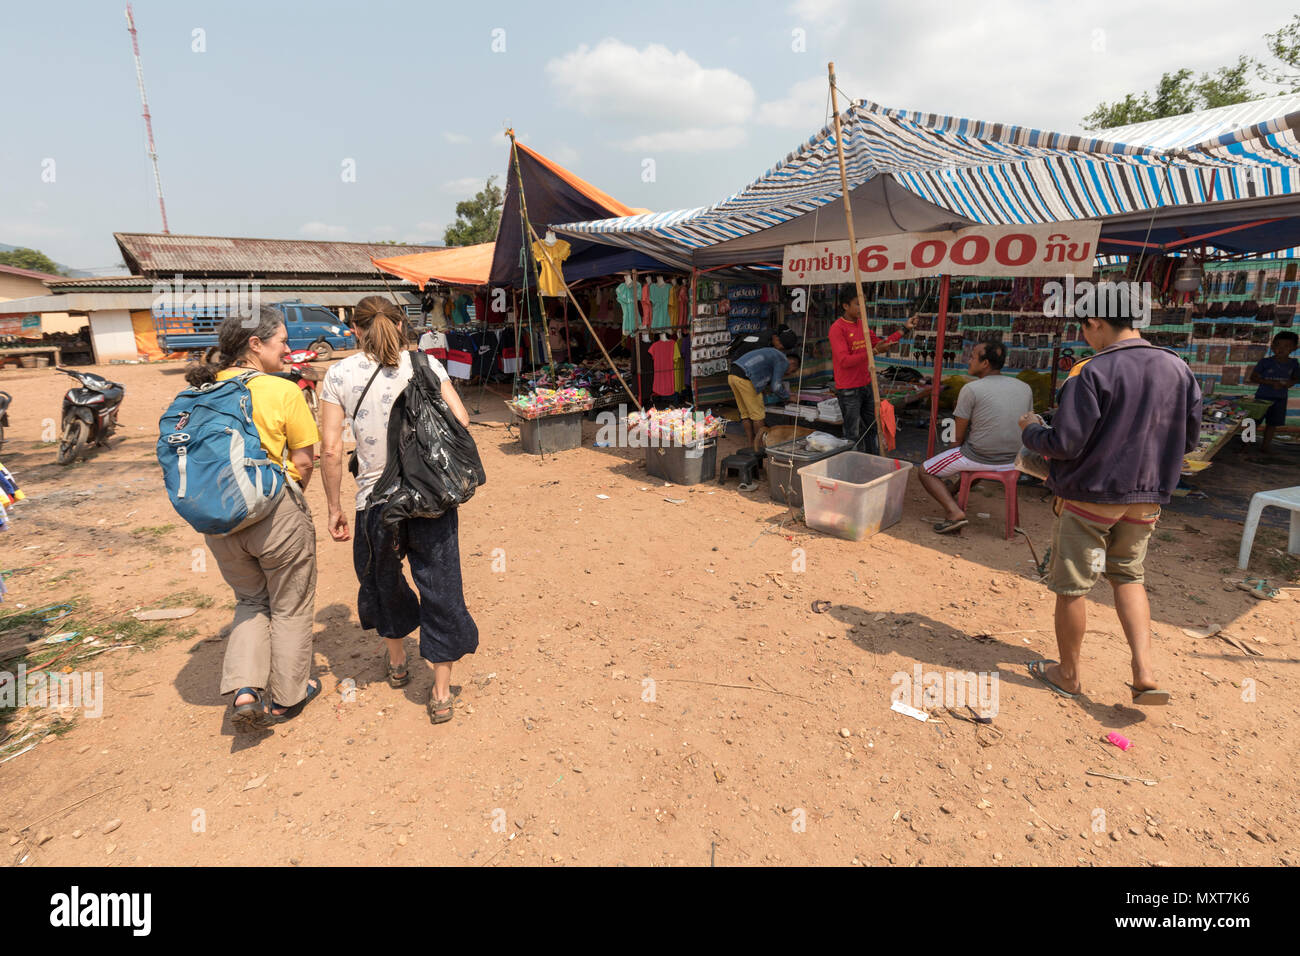 Two women walking through market, Boualapha, Laos Stock Photo